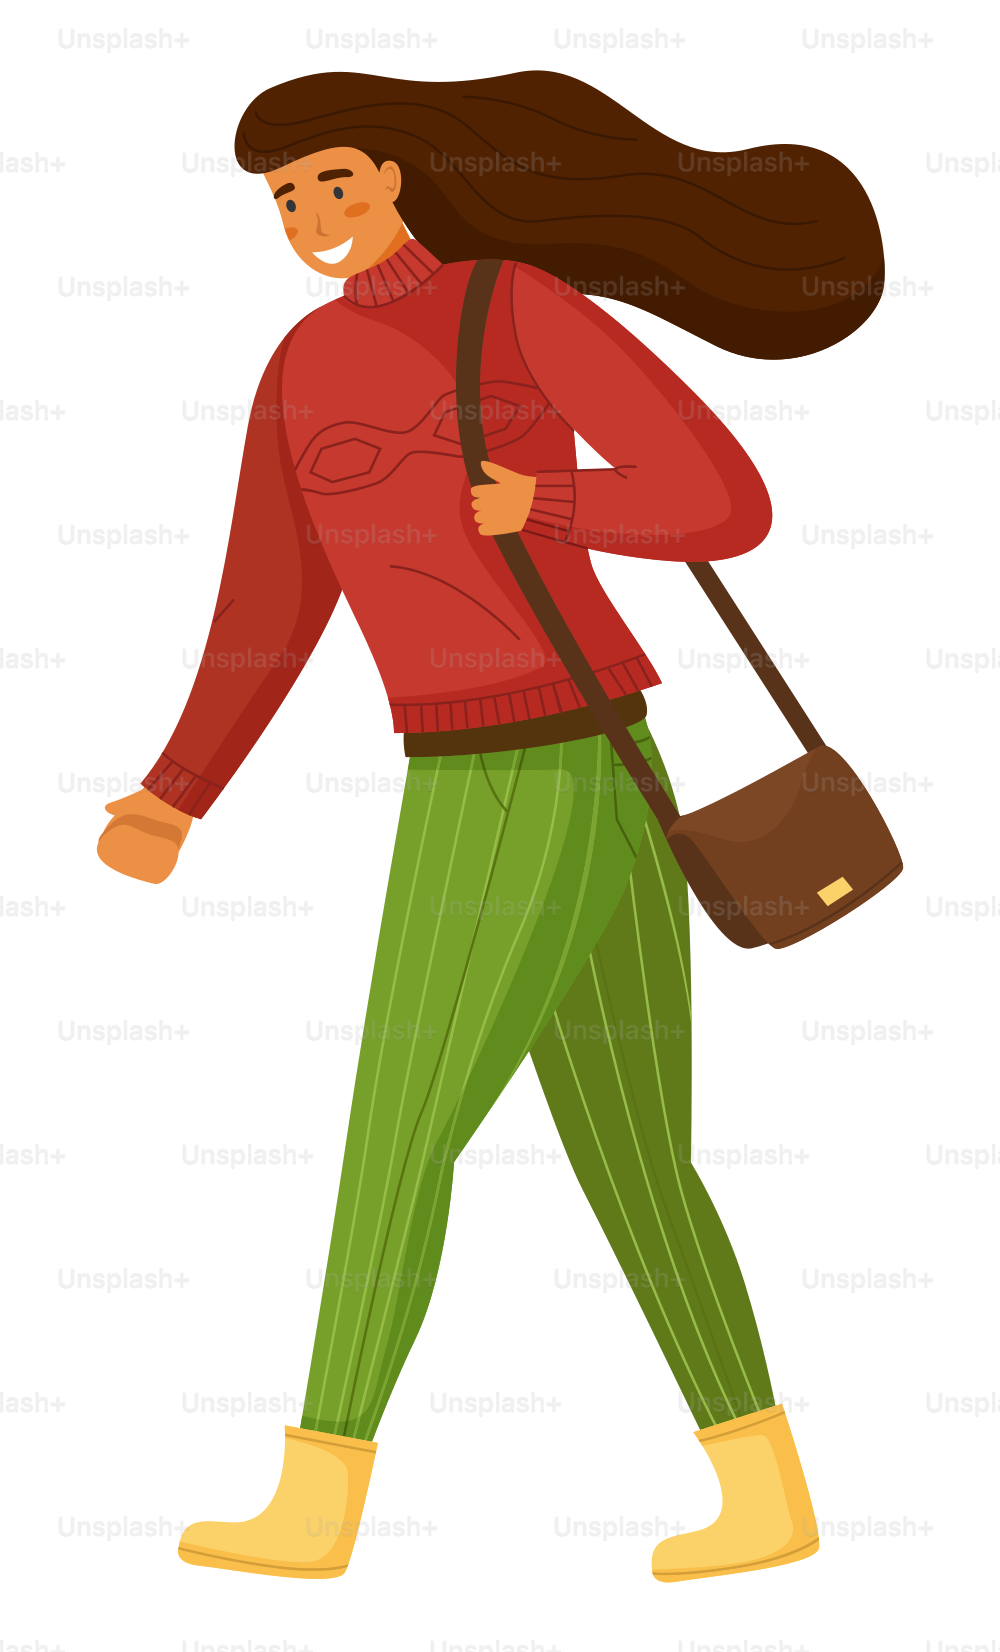 Donna che cammina con la borsa sulla spalla, personaggio isolato dei cartoni animati, ragazza che indossa maglione caldo e pantaloni a righe, allegra femmina felice marrone dai capelli lunghi, adolescente positivo o passeggiata studentesca